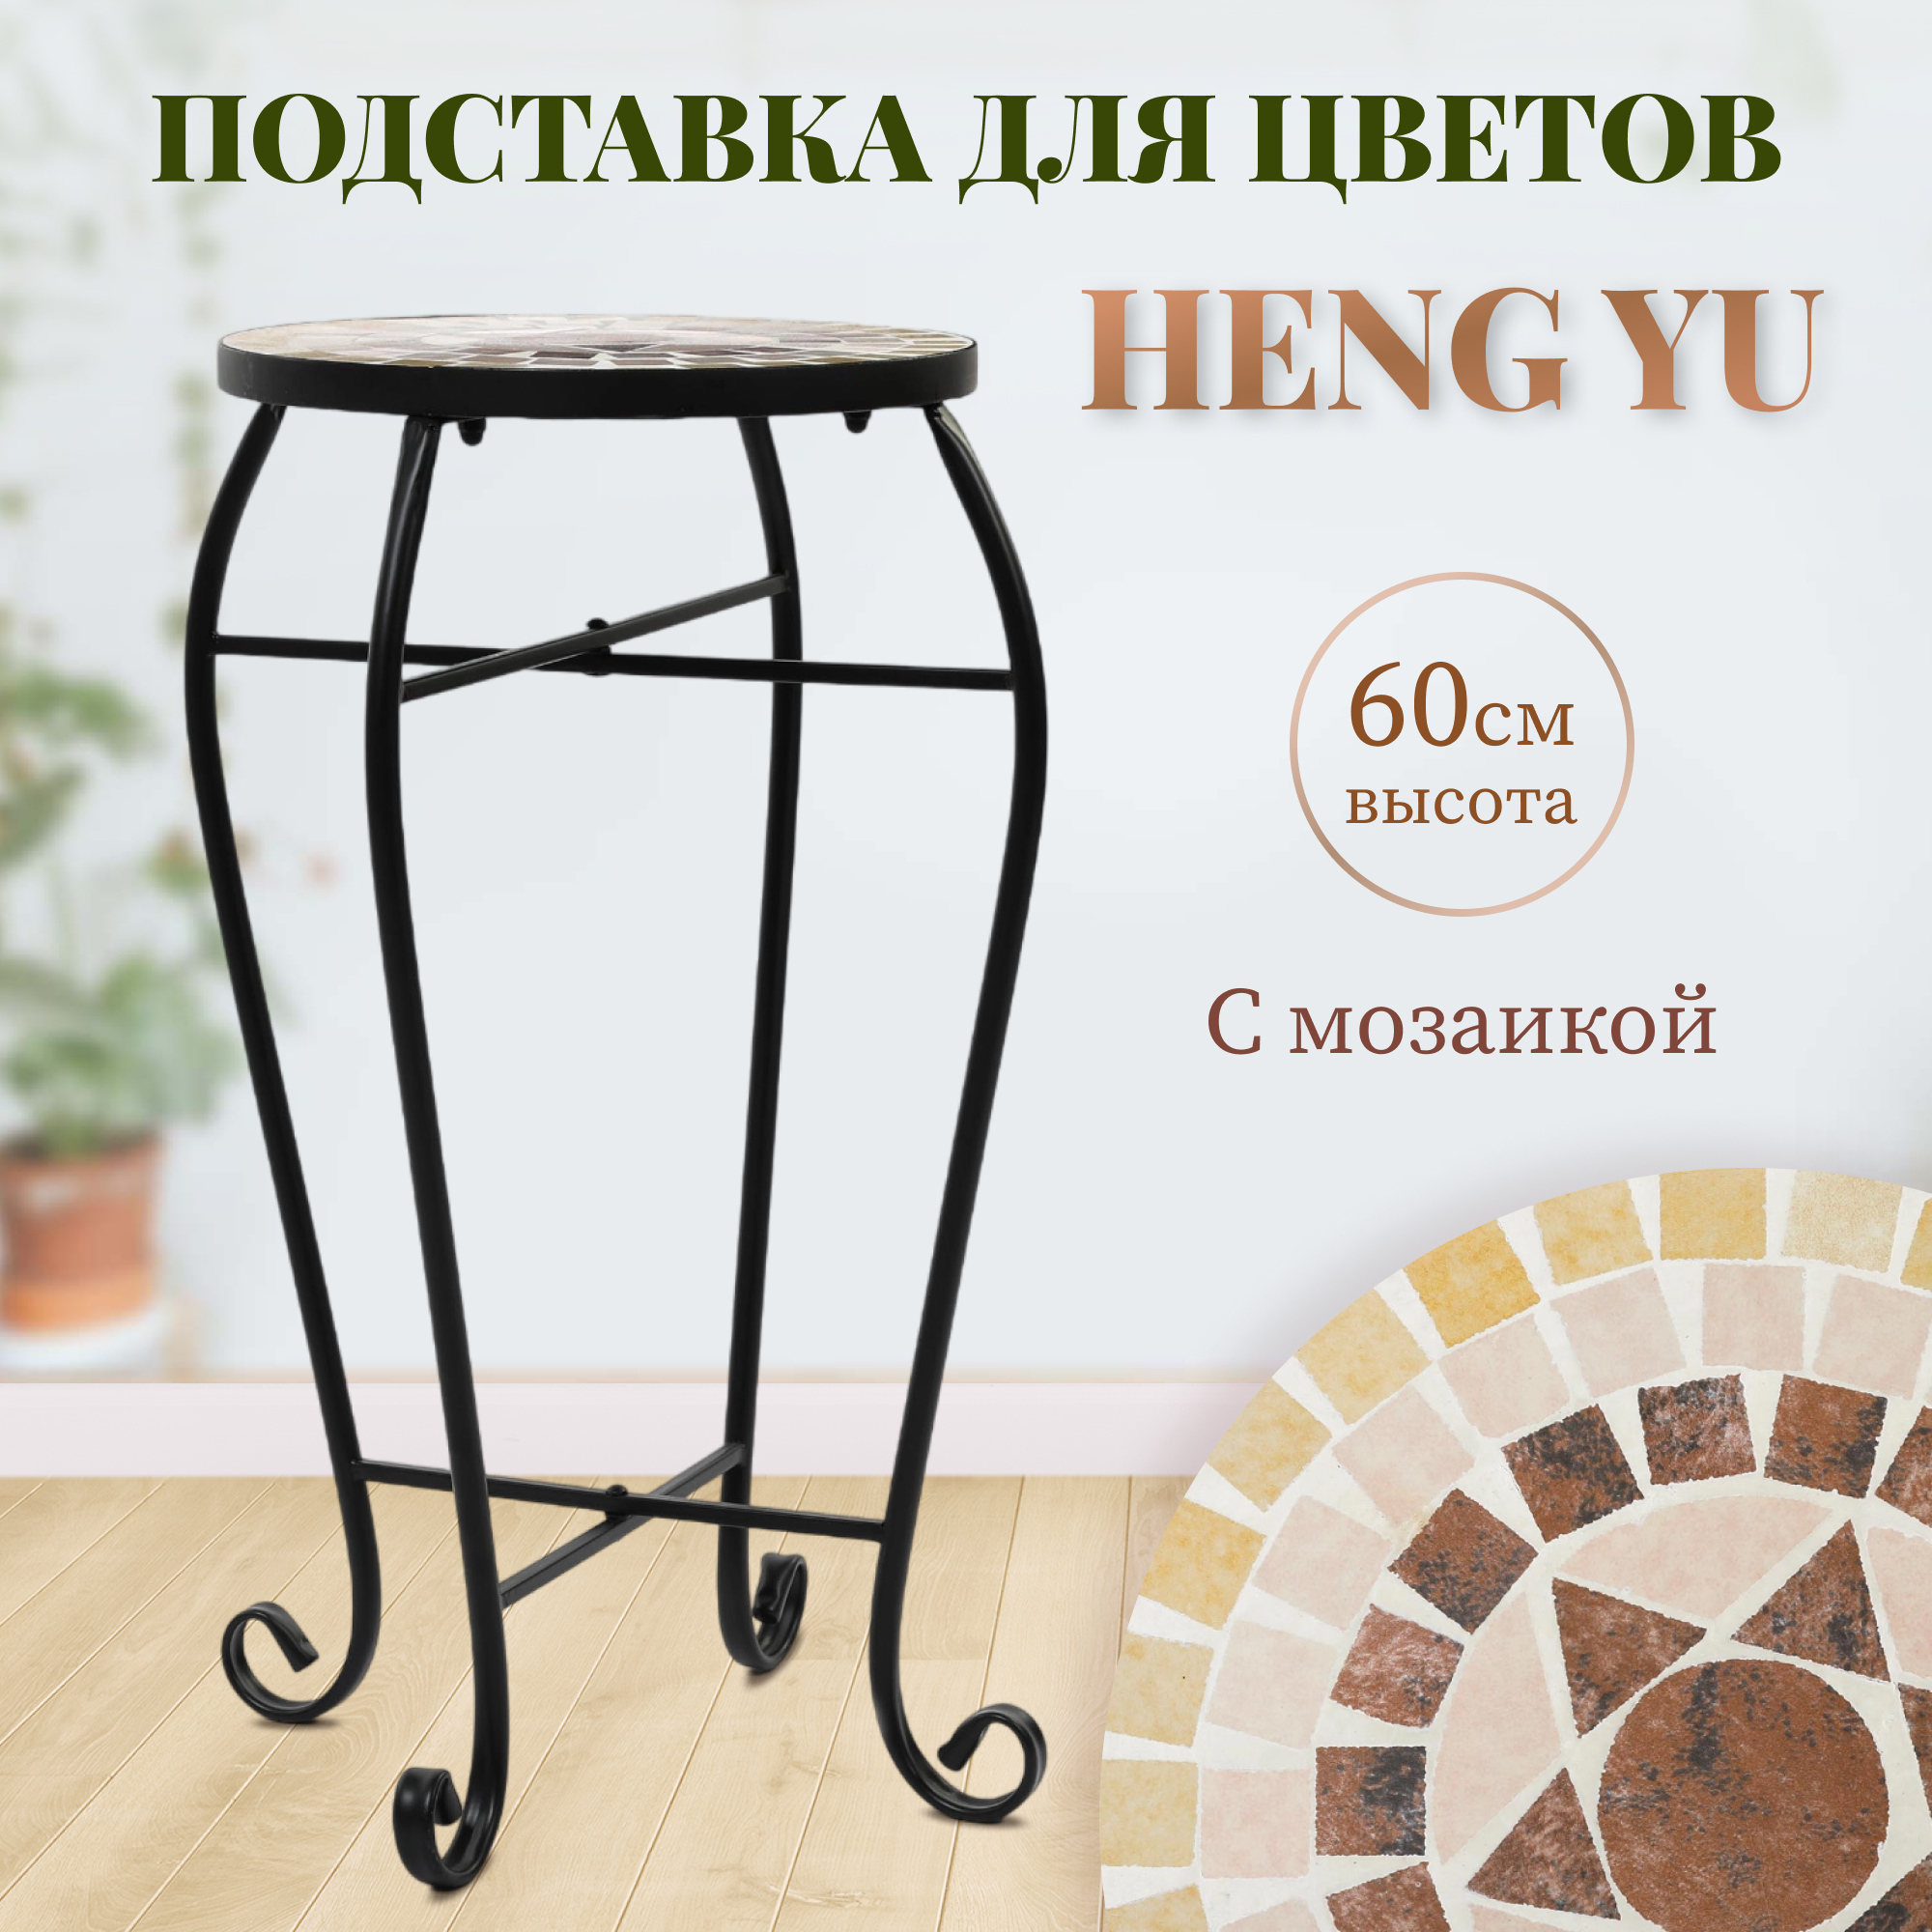 Подставка для цветов с мозаикой Heng Yu серая с коричневым 30х30х60 см